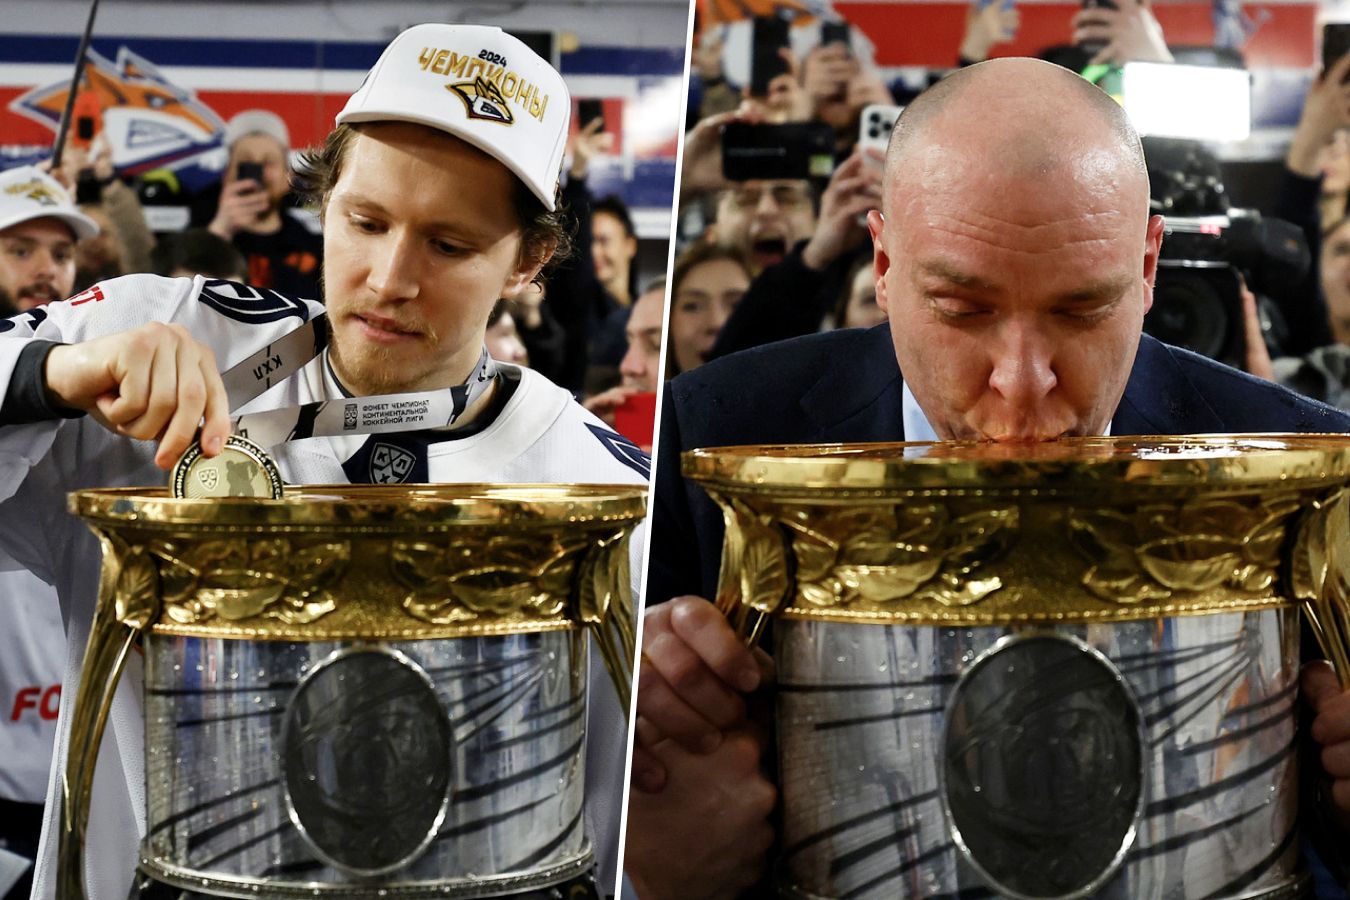 Зернов обмывал медаль, Мозякин и Разин пили из кубка. Фото чемпионства Металлурга